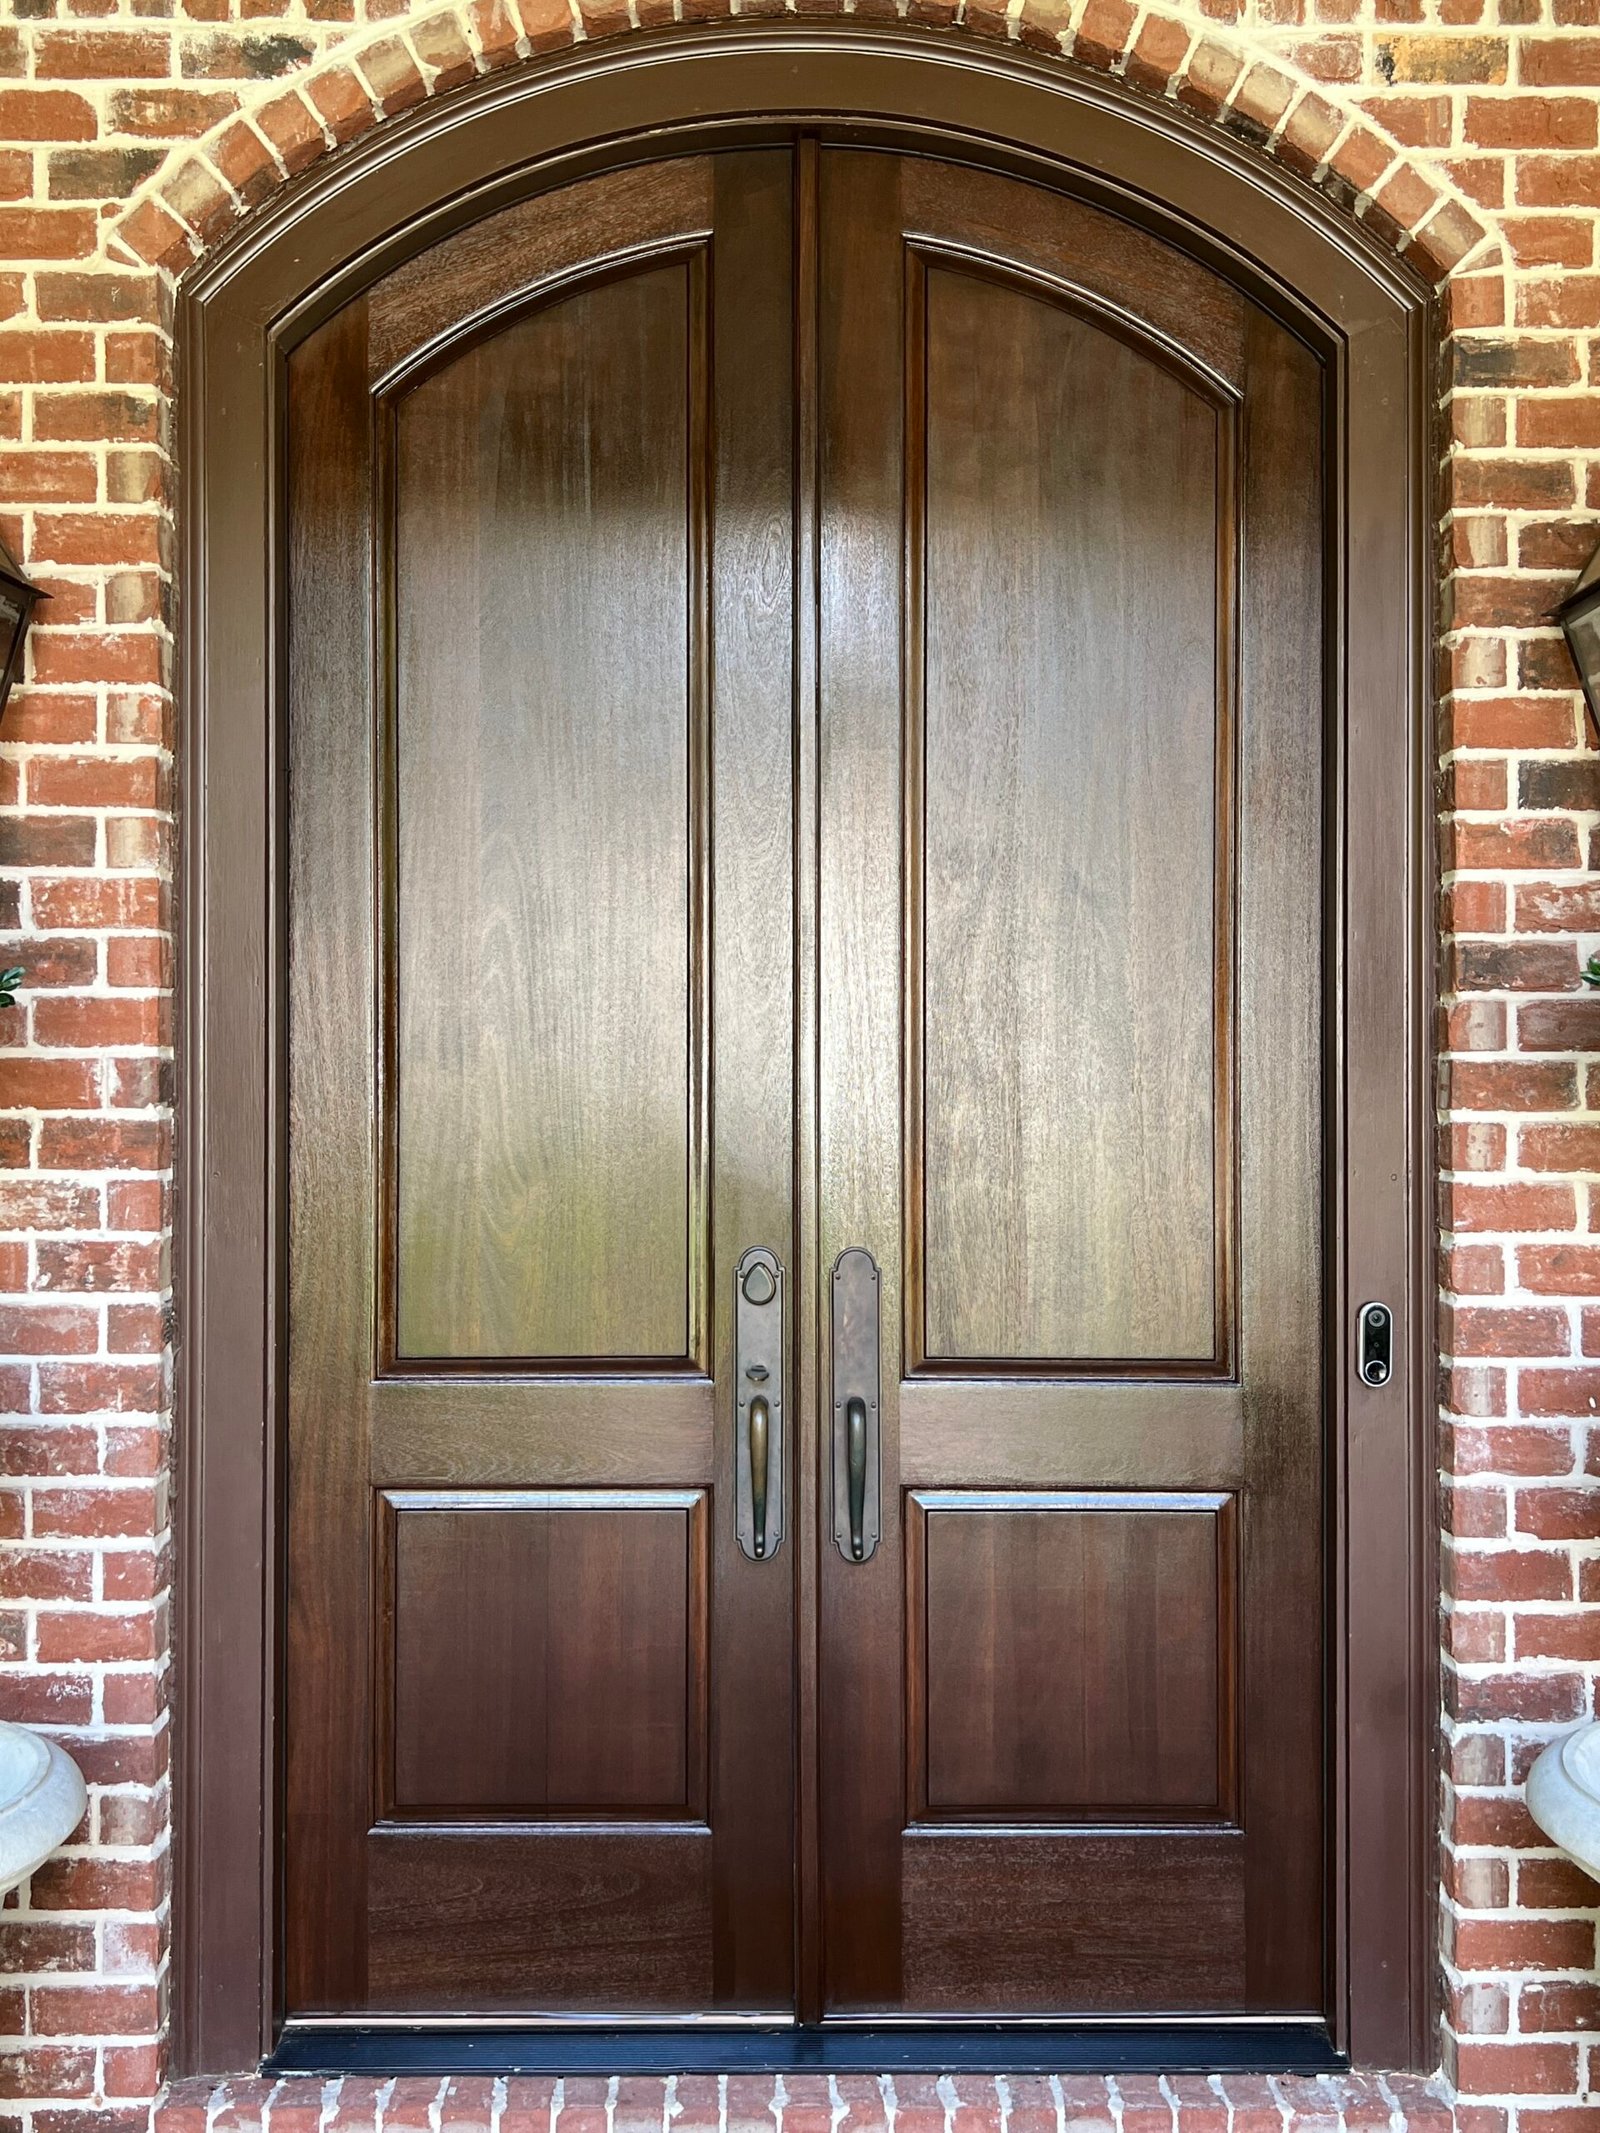 Recently restored wooden door